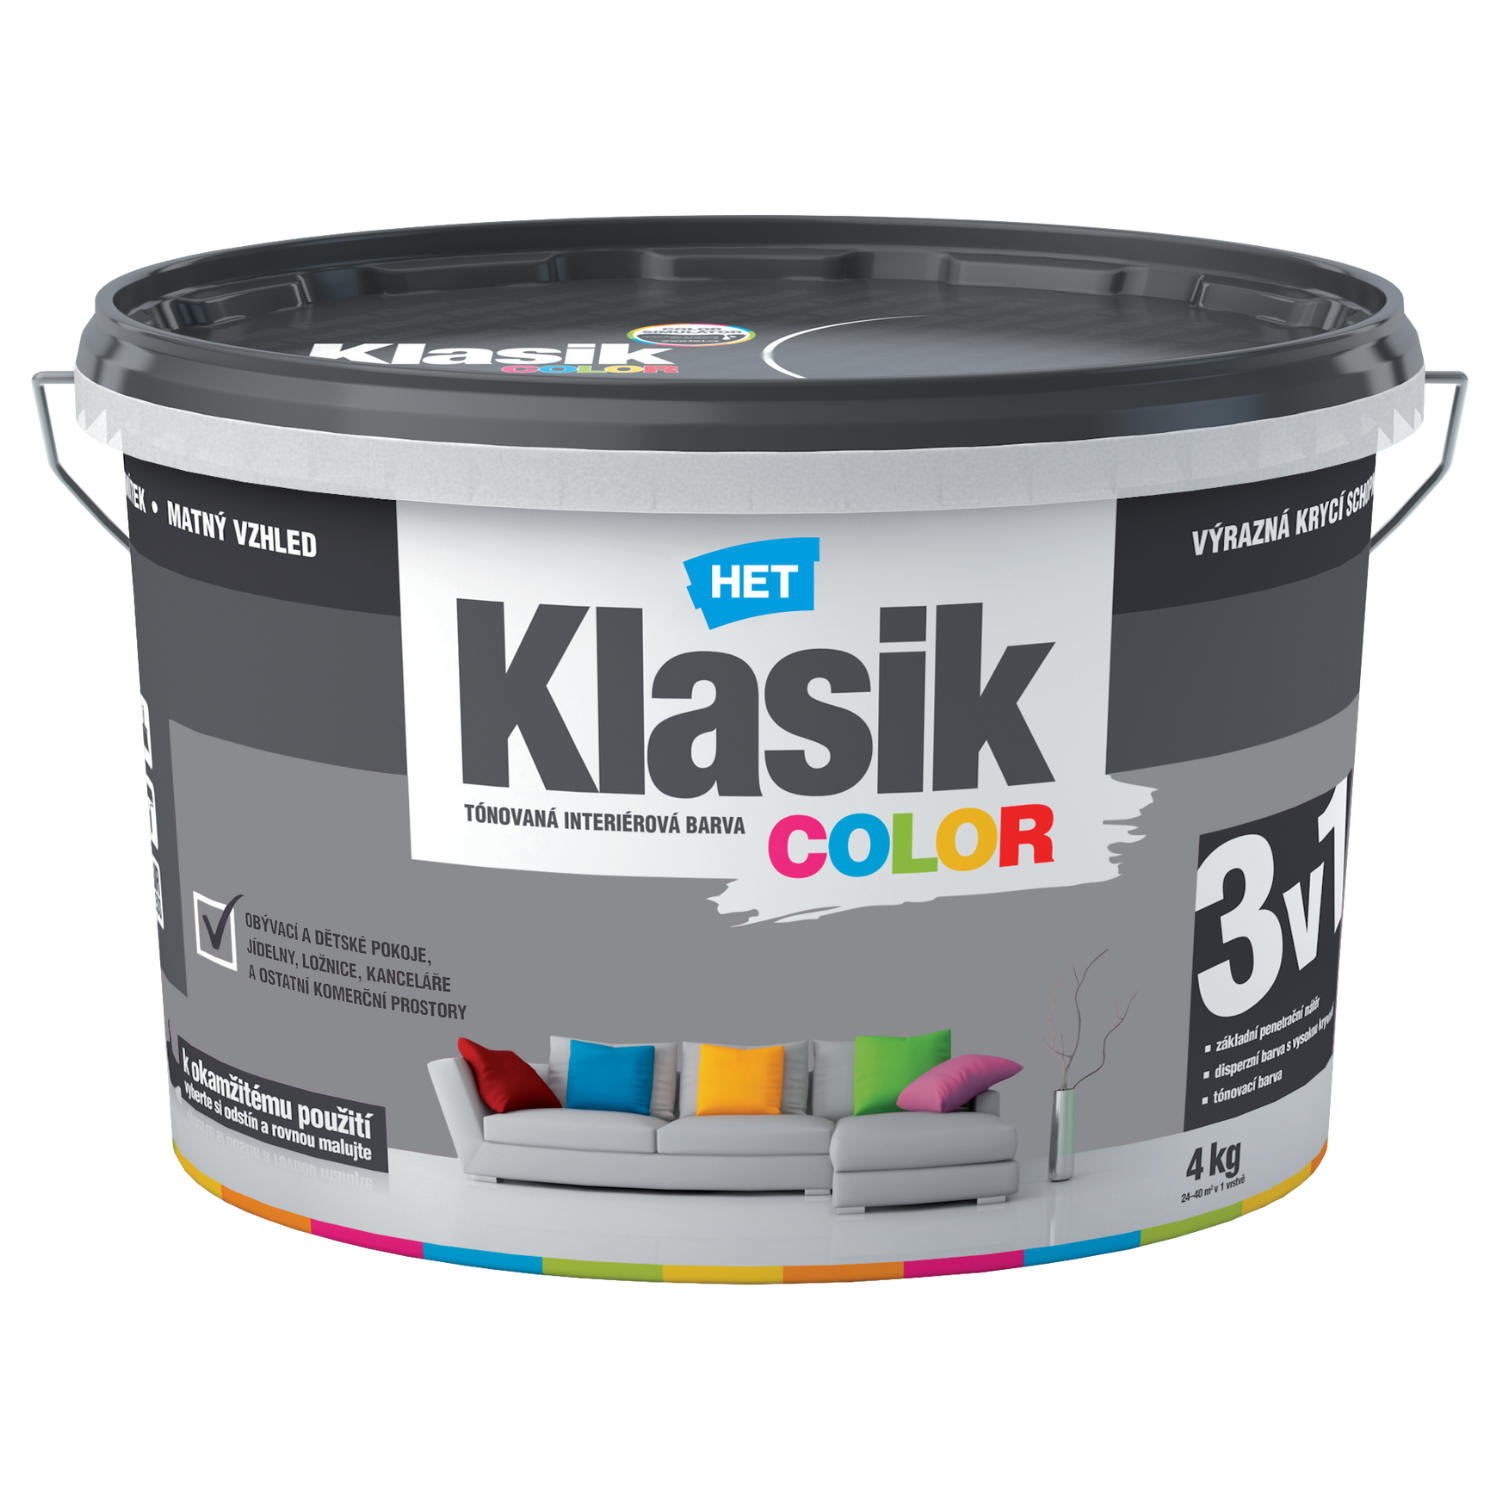 HET Klasik COLOR tónovaná interiérová akrylátová disperzná oteruvzdorná farba 4 kg, KC0147 - šedý bridlicový